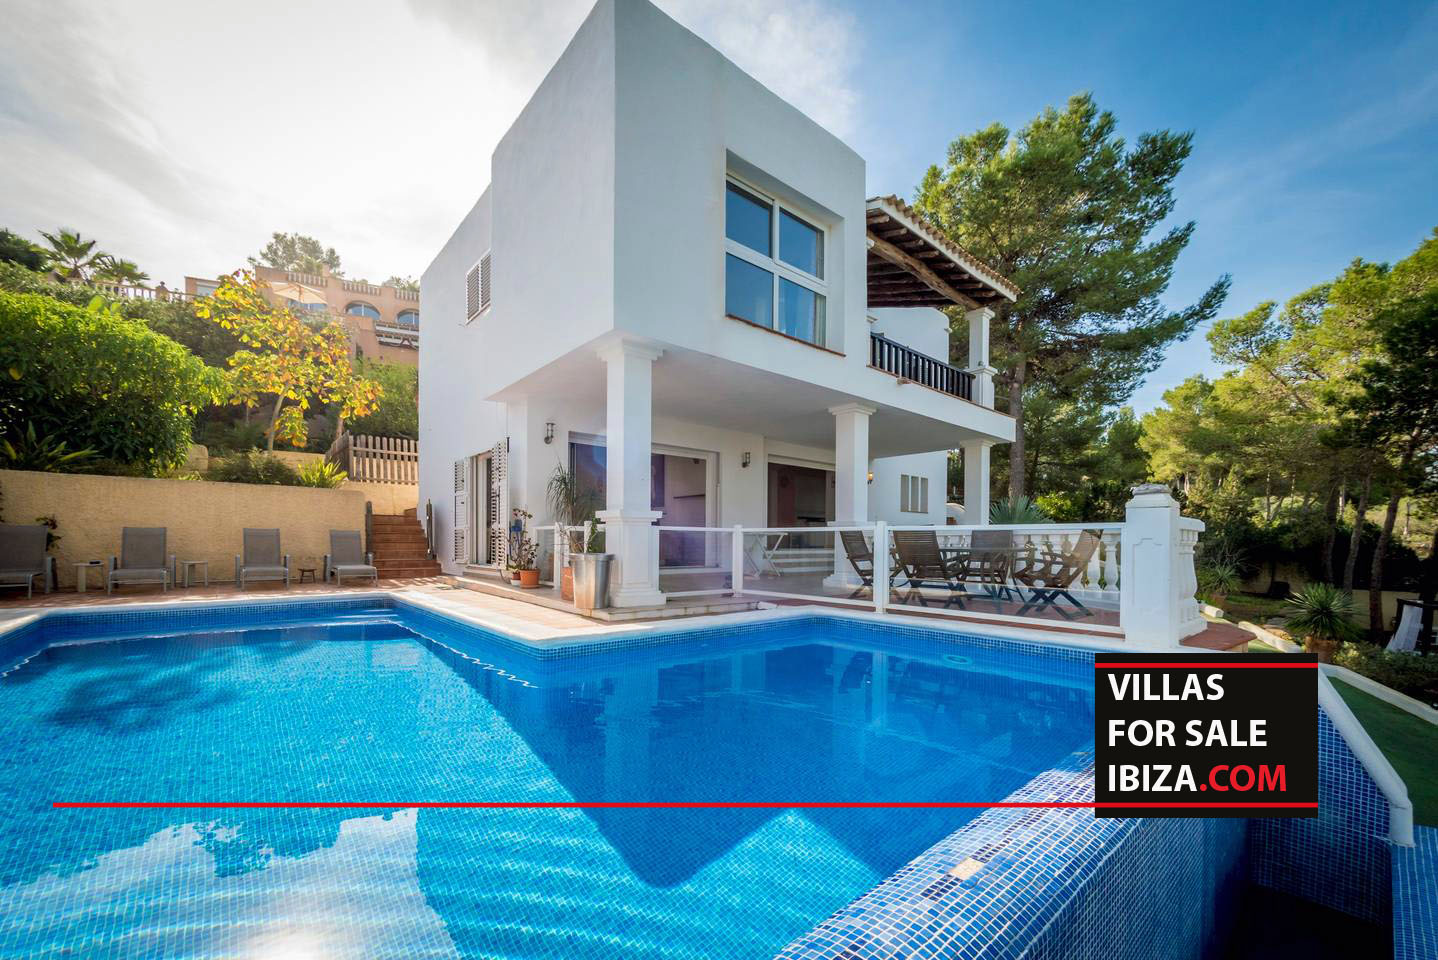 Villas for sale Ibiza Villa Agustine